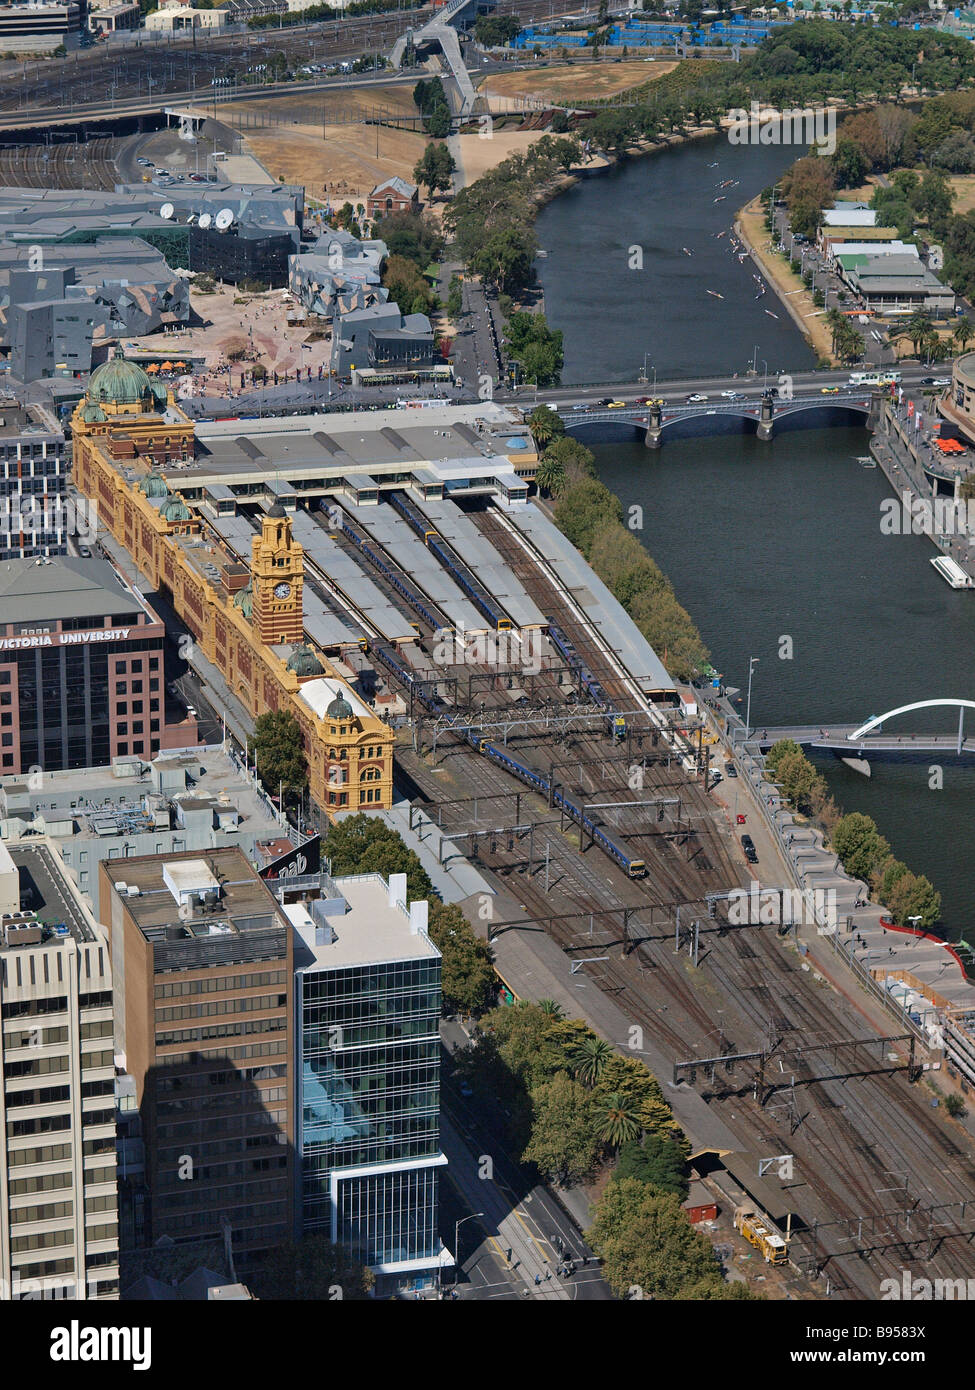 Vue aérienne de la ville de Melbourne Flinders Street station ferroviaire de rialto towers australie victoria Banque D'Images